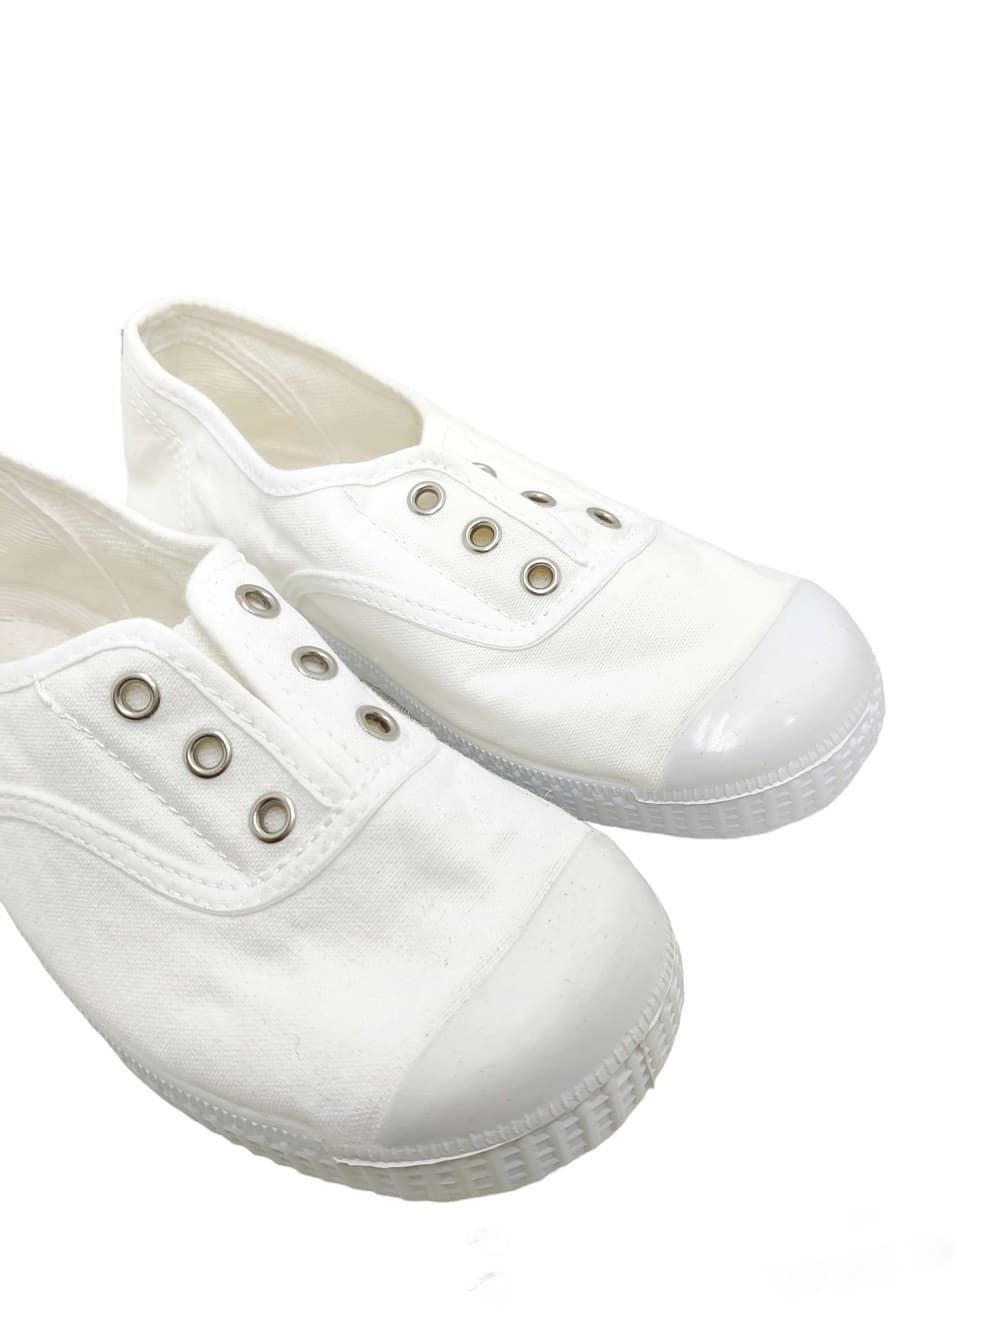 La Cadena Children's Sneakers White Canvas with Toe - Image 3